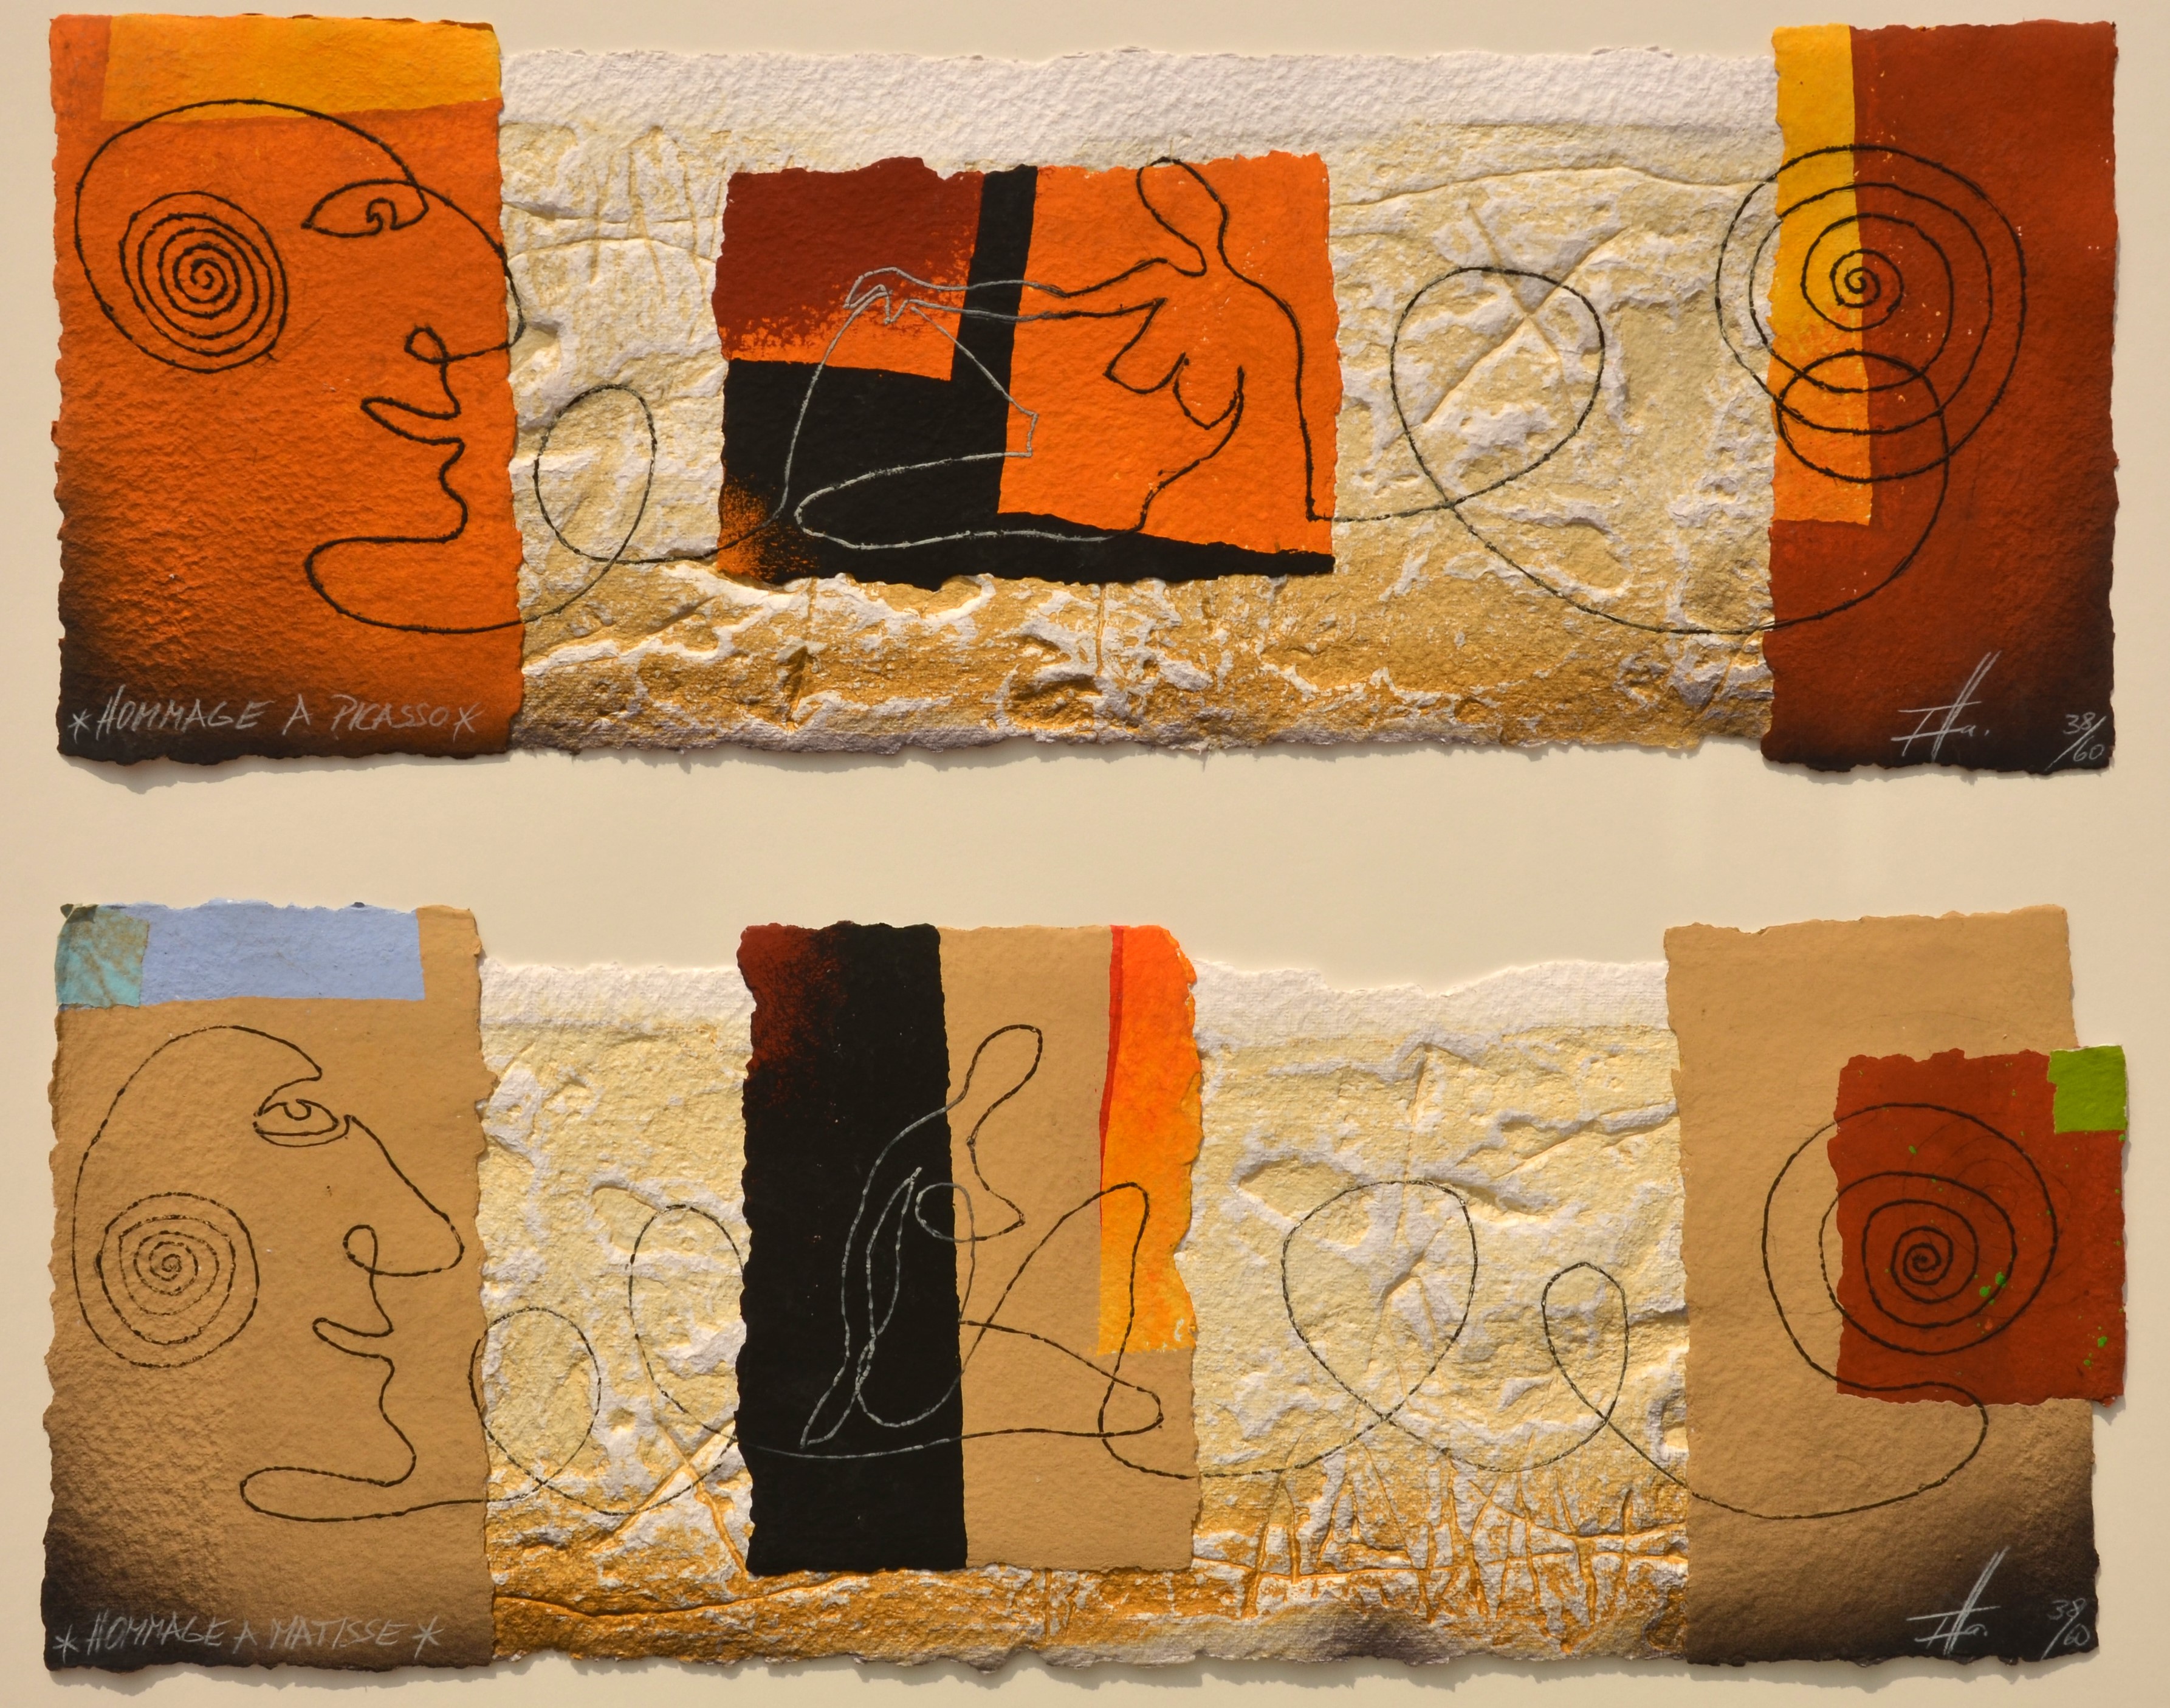 Exposition des 70's - Hommage à Picasso - Hommage à Matisse - Thomas Hamann - Peintures, aquarelles, dessins & lavis d'encre, gravures, pastels des années 70